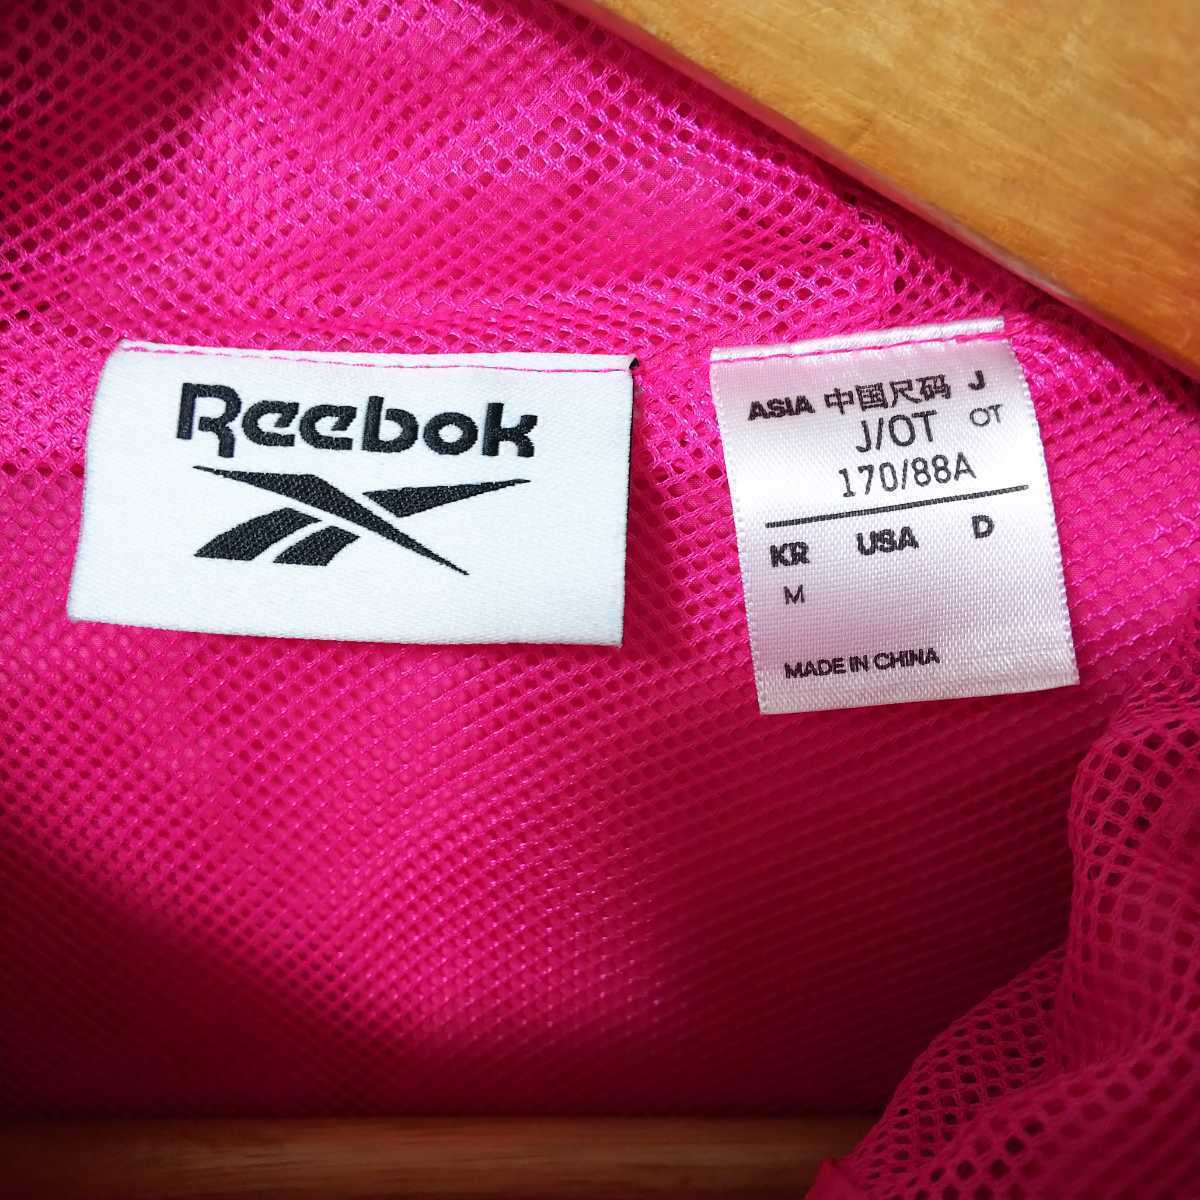 [ популярный бренд ]Reebok Reebok core ветровка тренировка жакет женский OT размер розовый обратная сторона сетка 